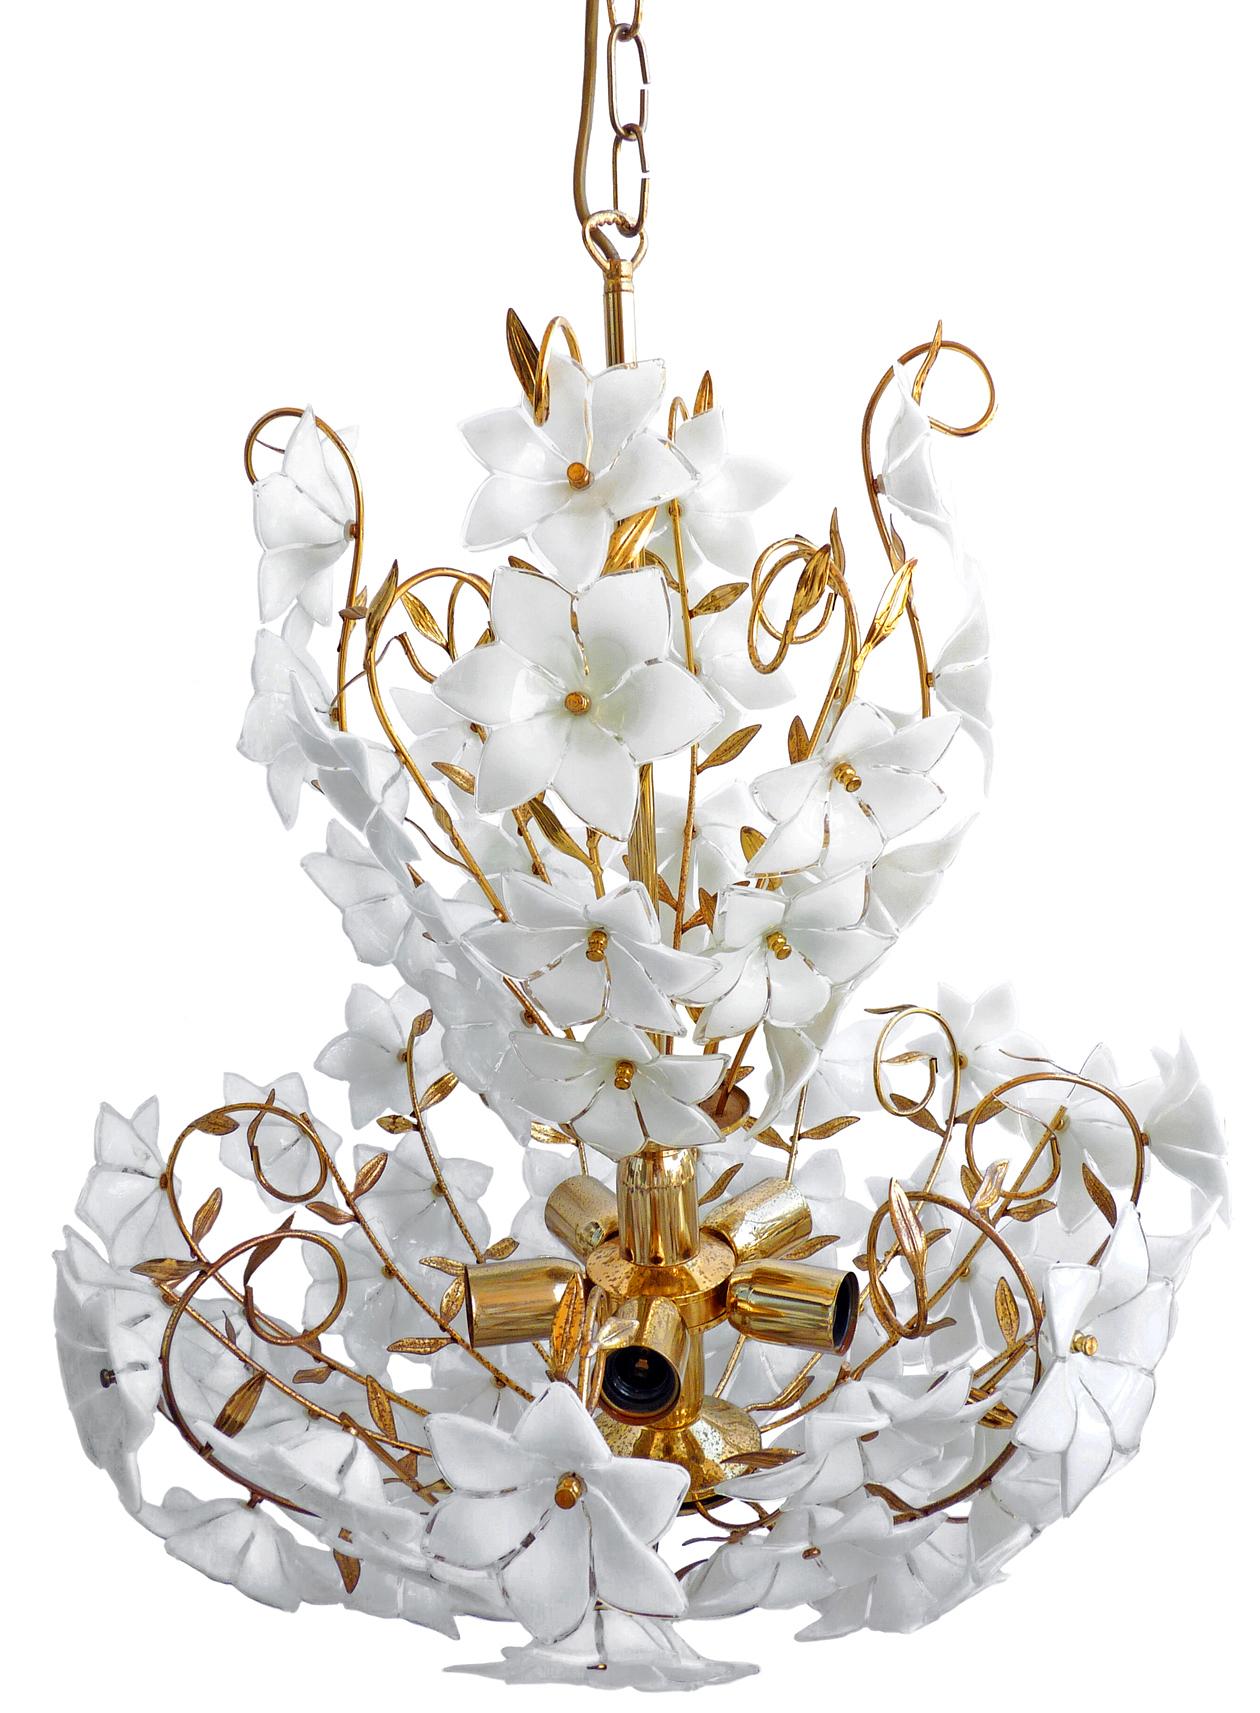 Monumental Modernist Italian Murano Venini Style Flower Glass Gilt Chandelier (20. Jahrhundert)